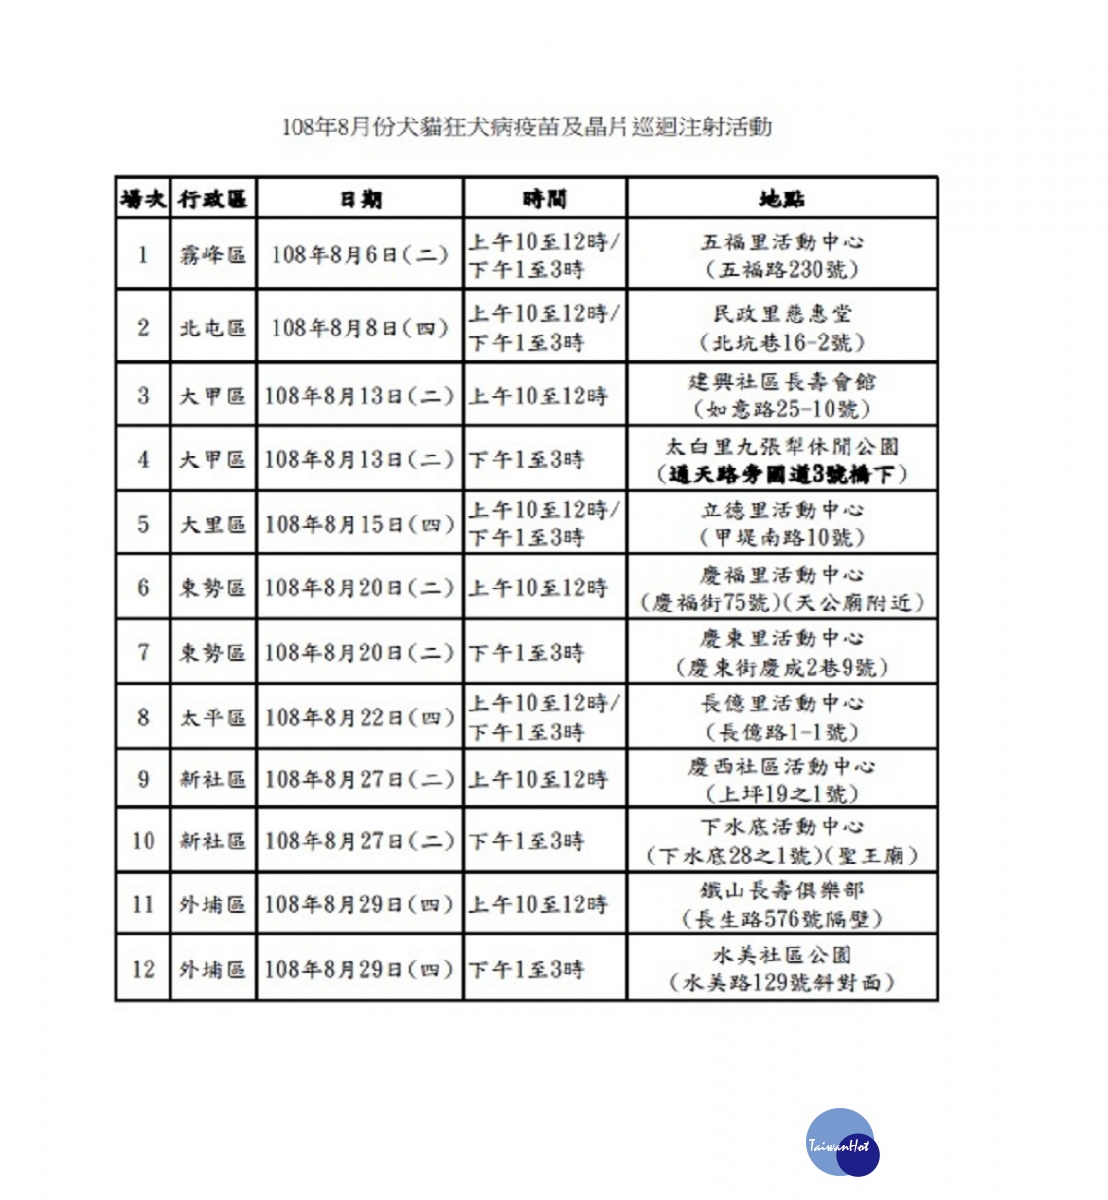 台中市8月份犬貓狂犬病疫苗及晶片巡迴注射活動行程表